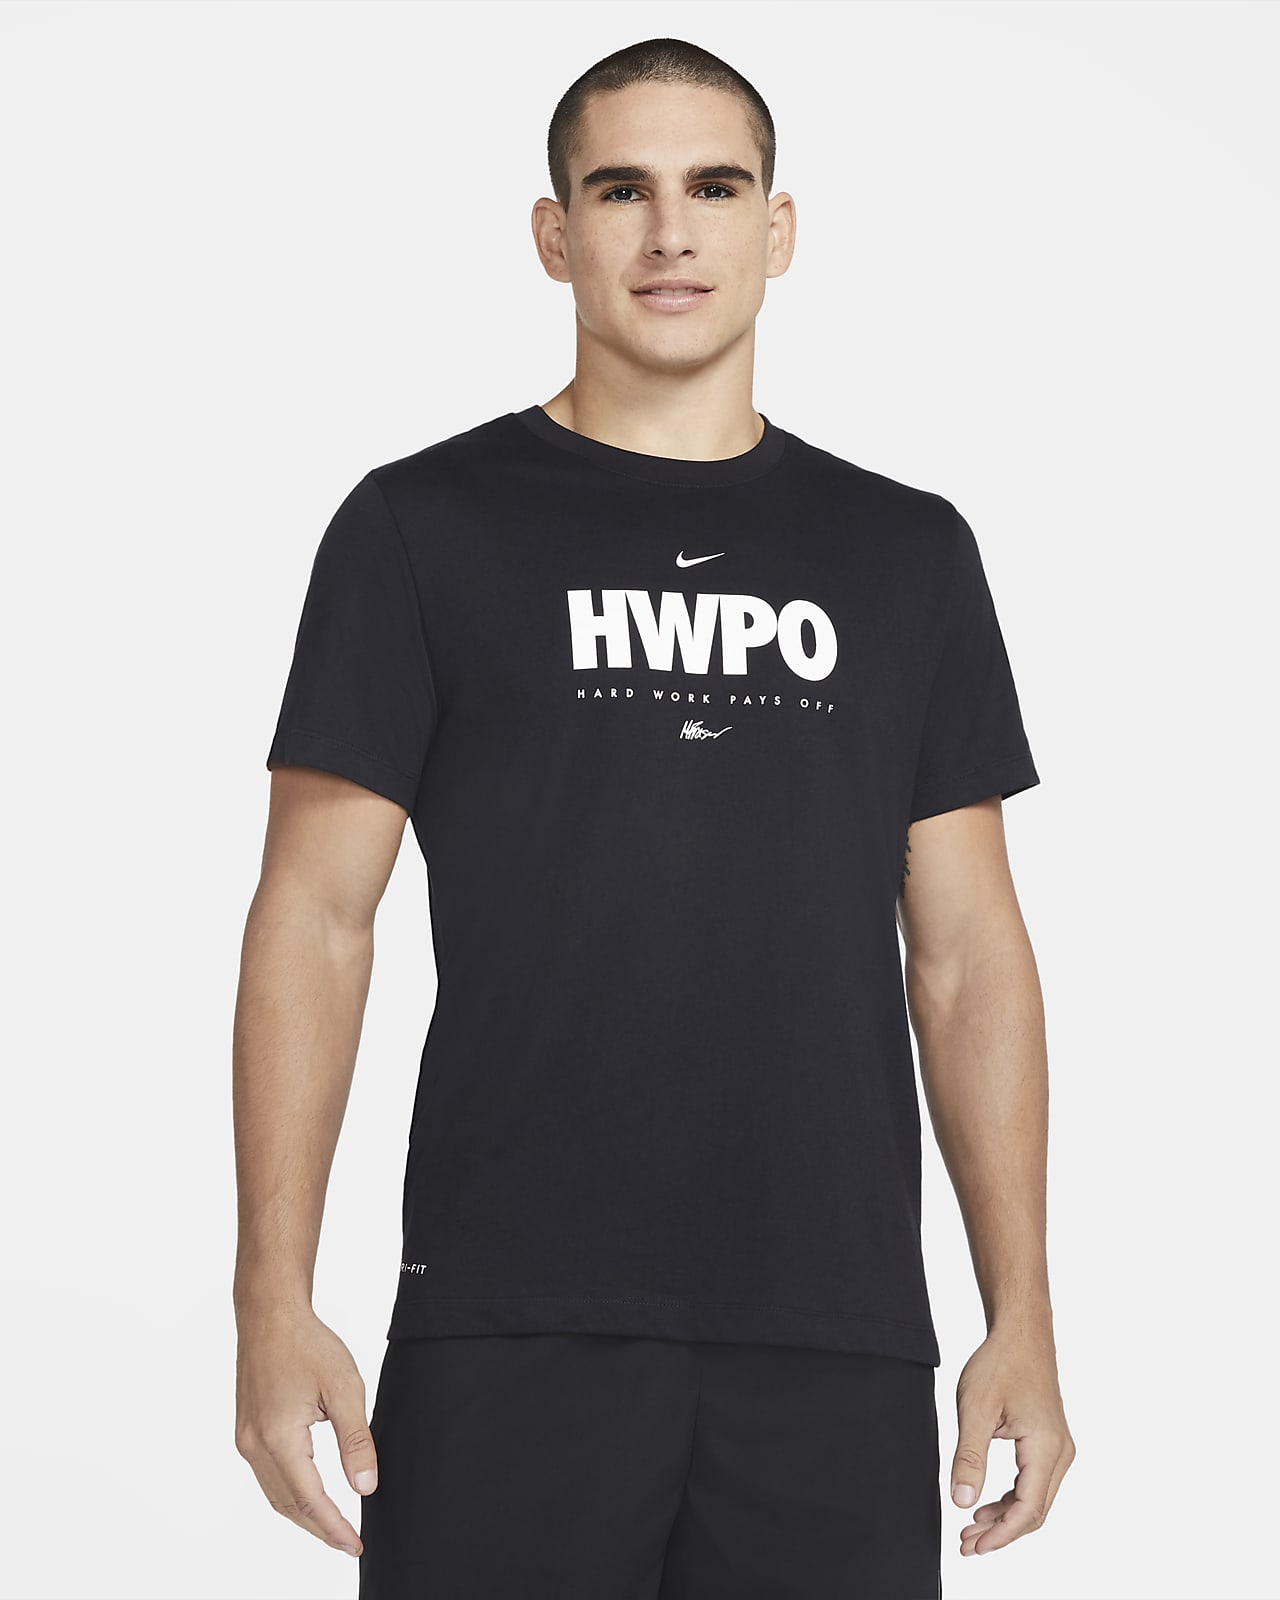 Tränings-t-shirt Nike Dri-FIT "HWPO" för män